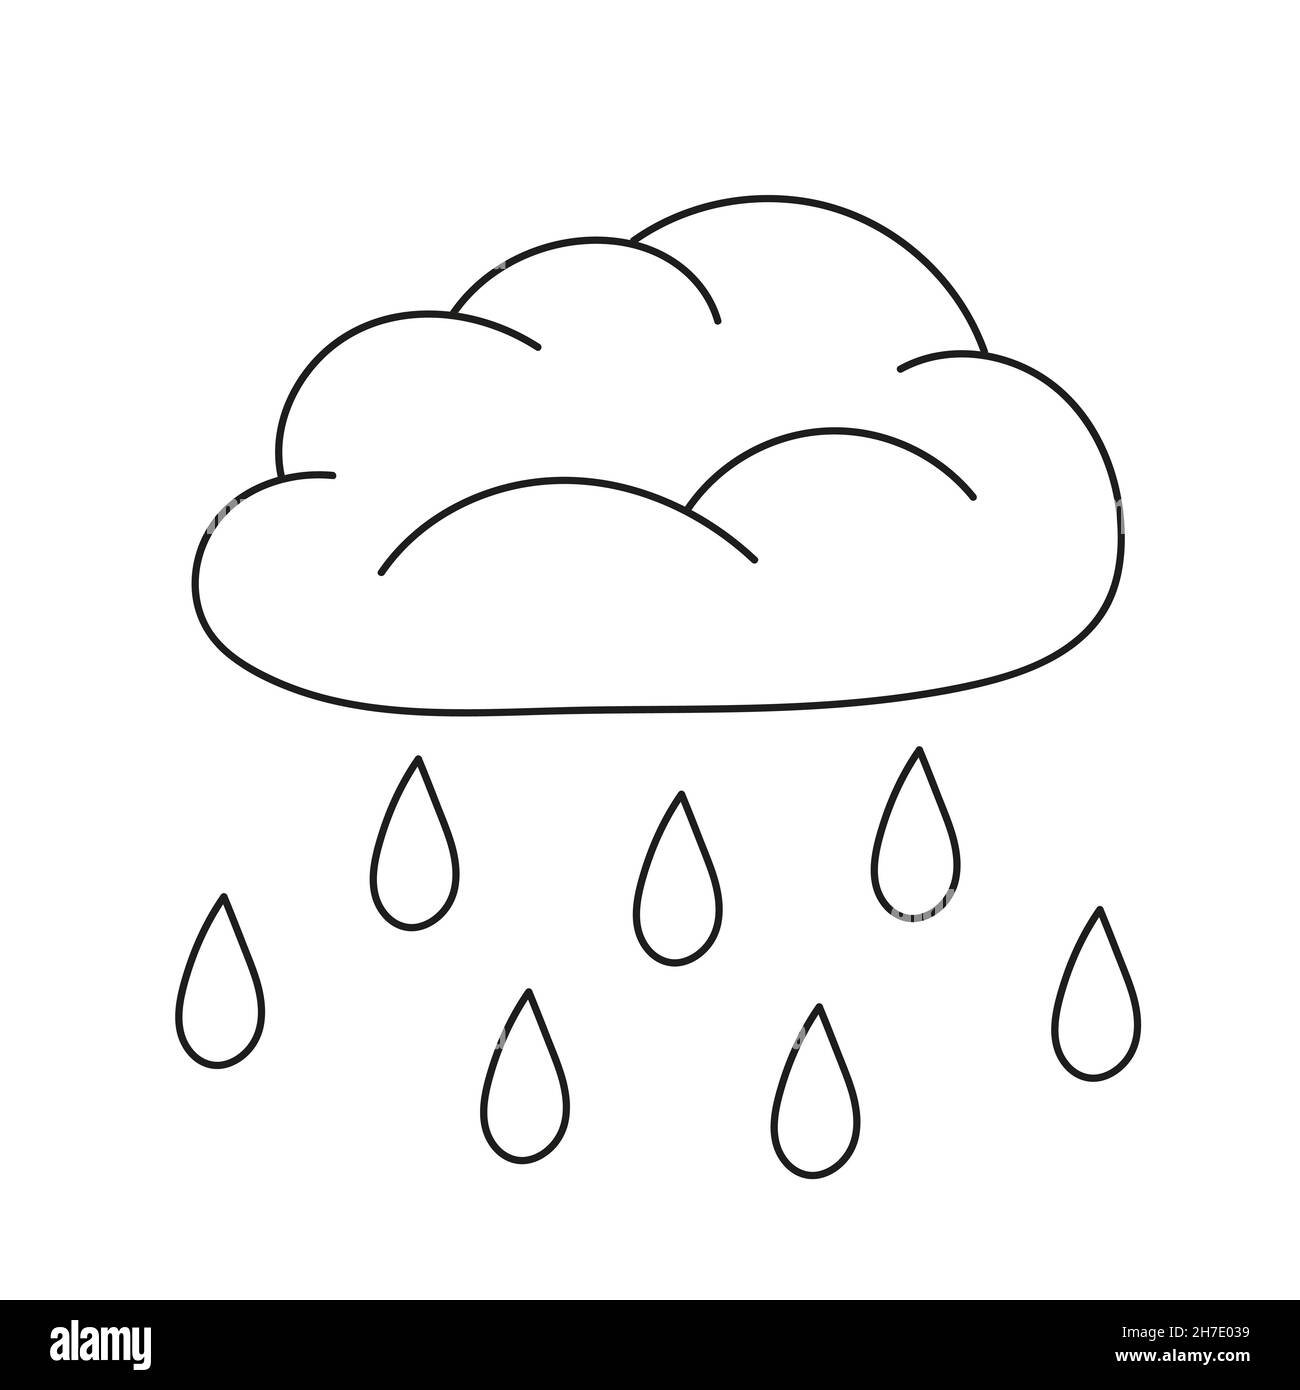 Page de coloriage simple.Un joli nuage de pluie.Page de couleur noire et blanche vectorielle pour les enfants Illustration de Vecteur